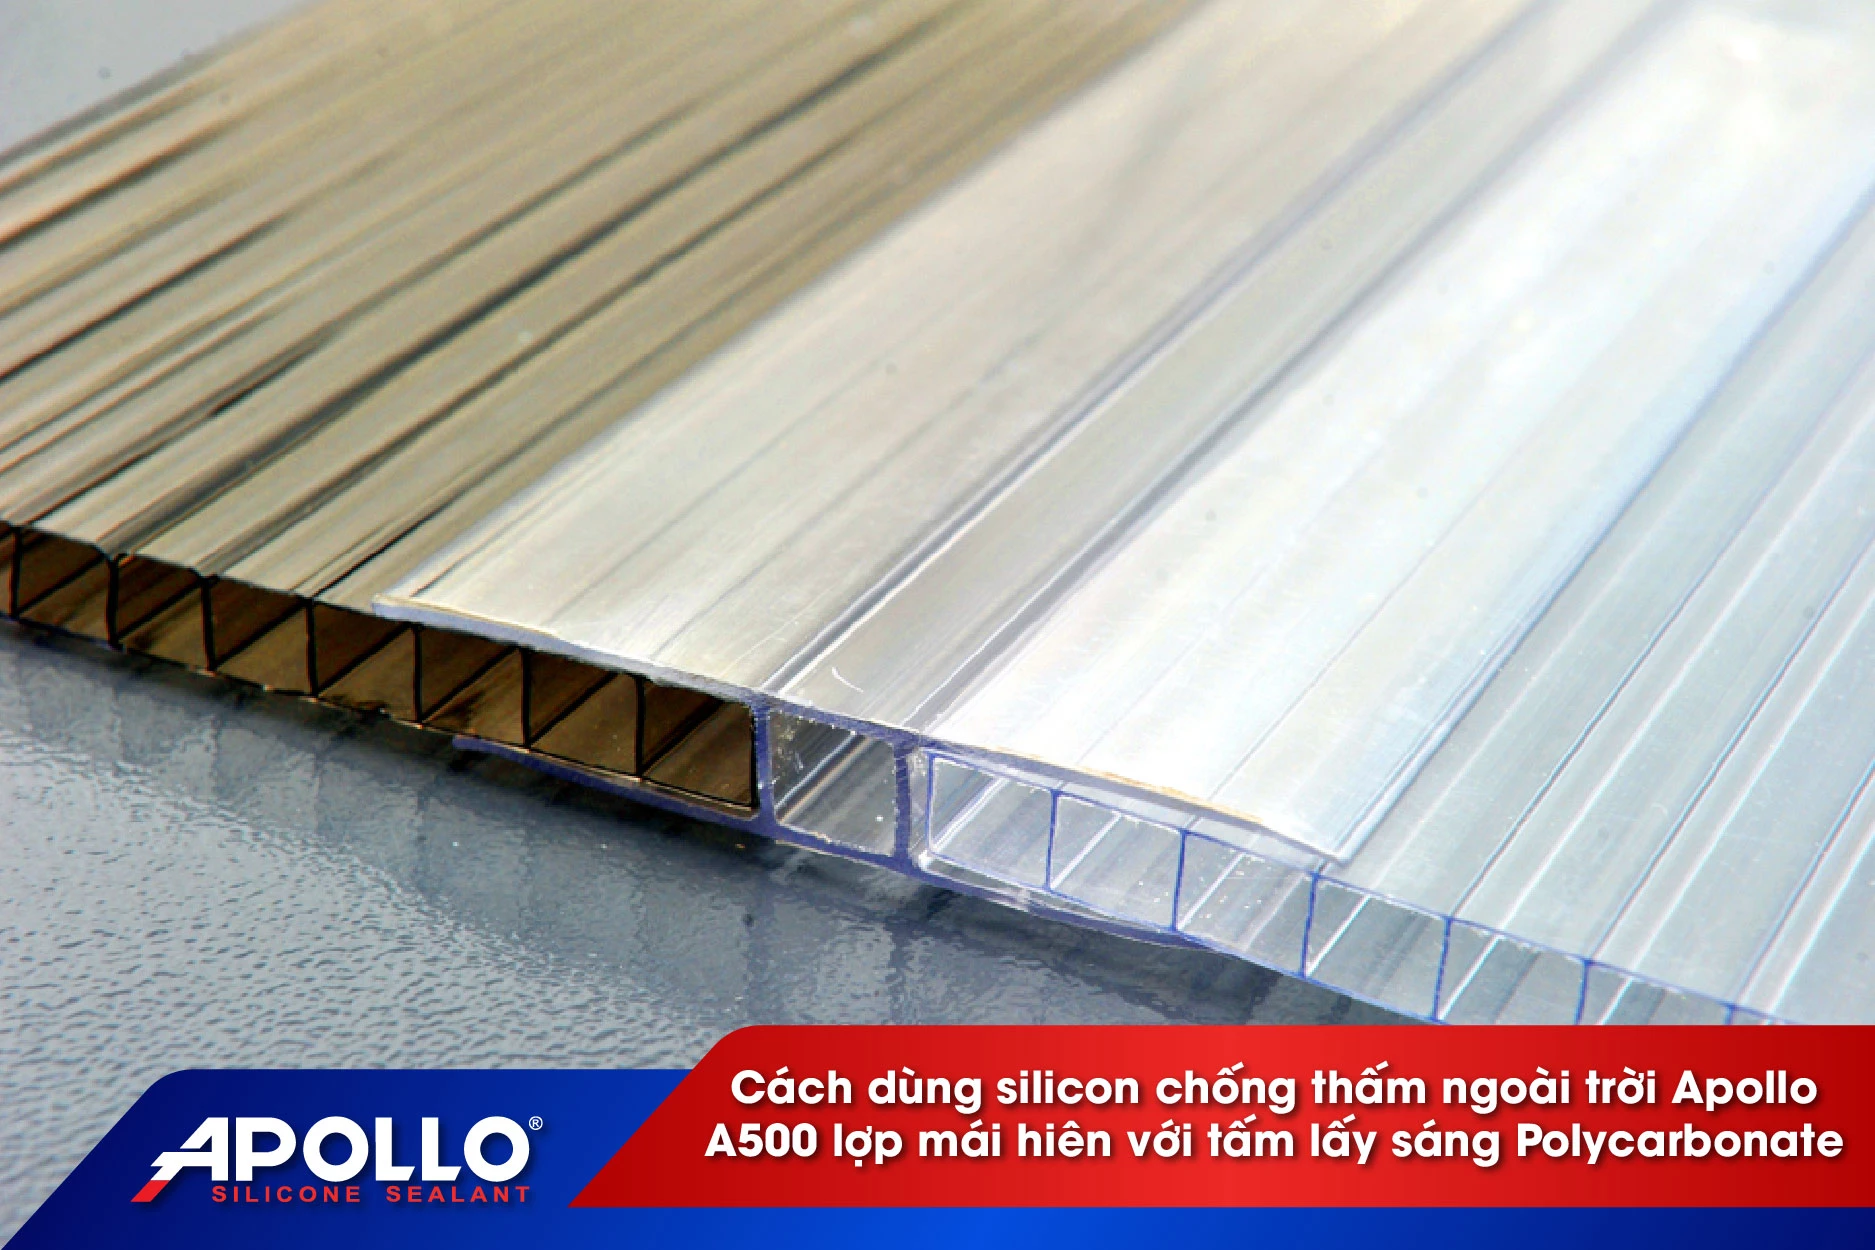 Cách dùng silicon chống thấm ngoài trời Apollo A500 lợp mái hiên với tấm lấy sáng Polycarbonate